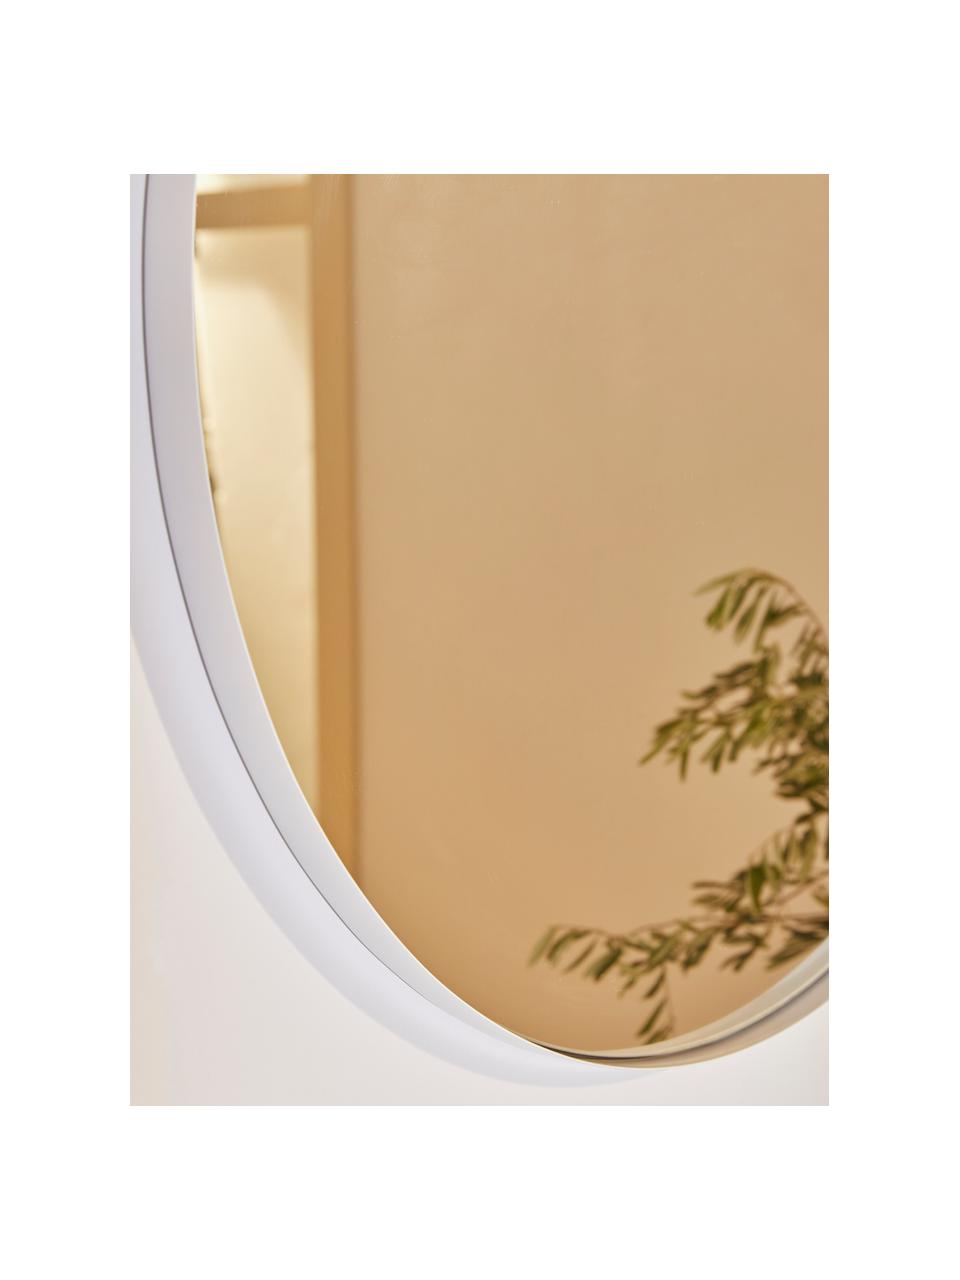 Specchio rotondo da parete con cornice in metallo bianco Ivy, Cornice: metallo verniciato a polv, Retro: pannello di fibra a media, Superficie dello specchio: lastra di vetro, Bianco, Ø 100 x Prof. 3 cm